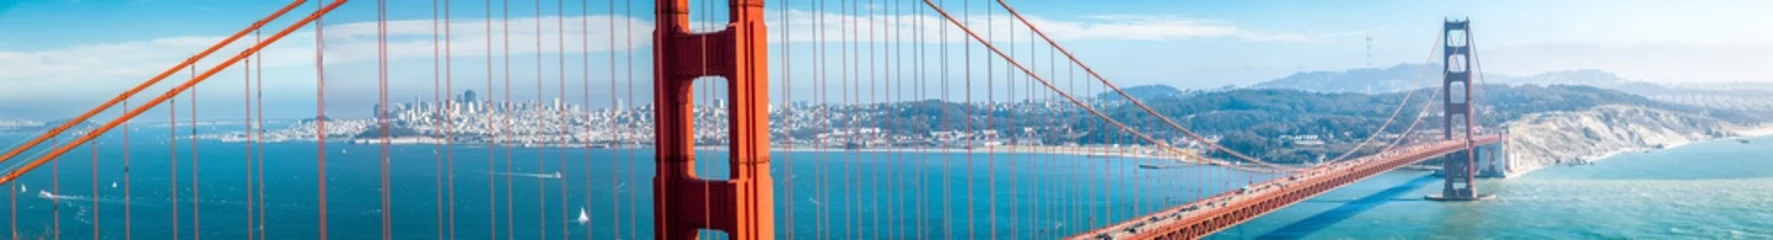 Poster Golden Gate Bridge-panorama met de horizon van San Francisco in de zomer, Californië, de V.S © JFL Photography